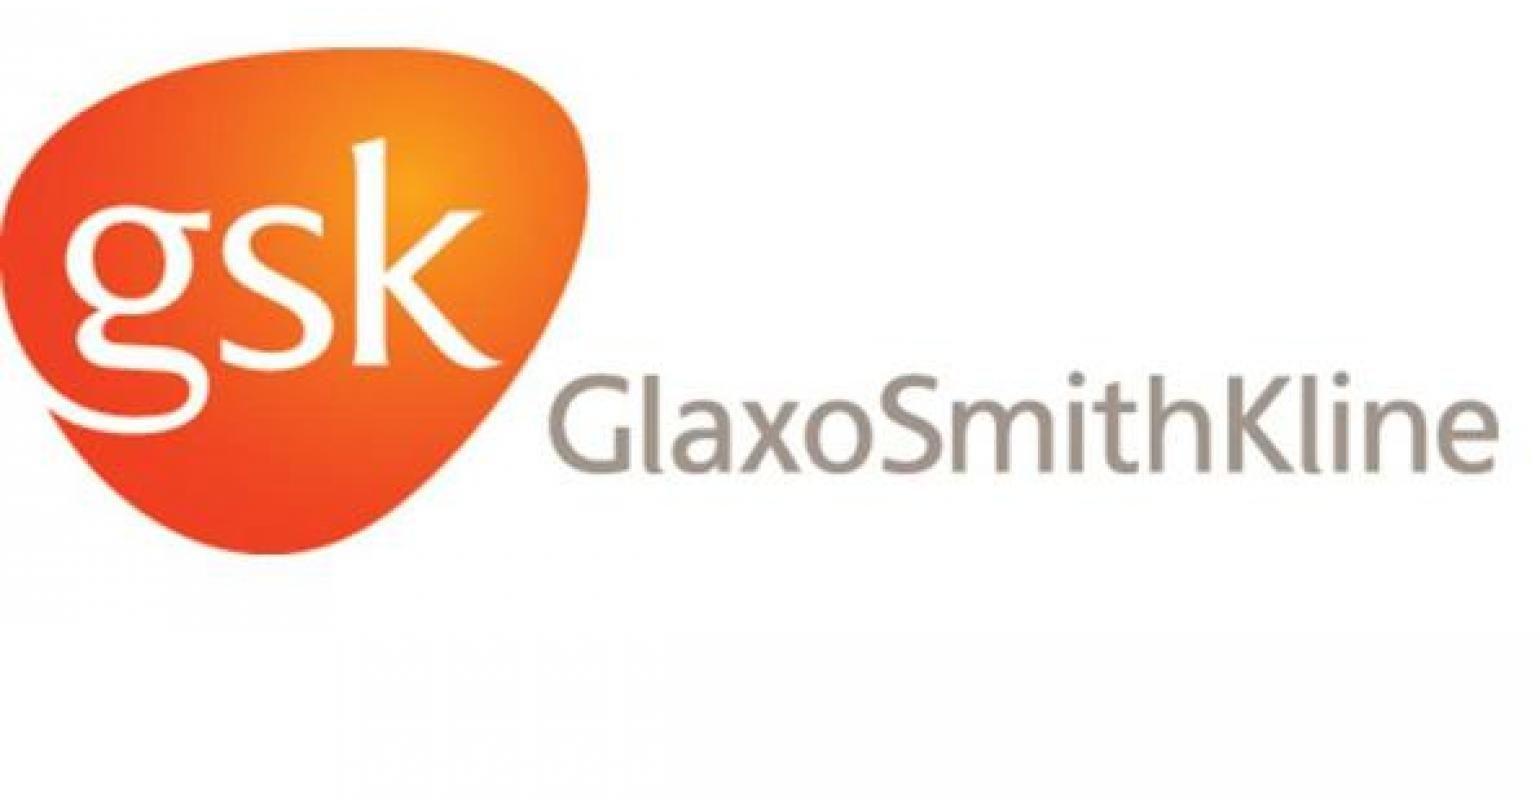 GlaxoSmithKline Logo - GlaxoSmithKline to Pay $3 Billion in Largest Health Care Fraud ...